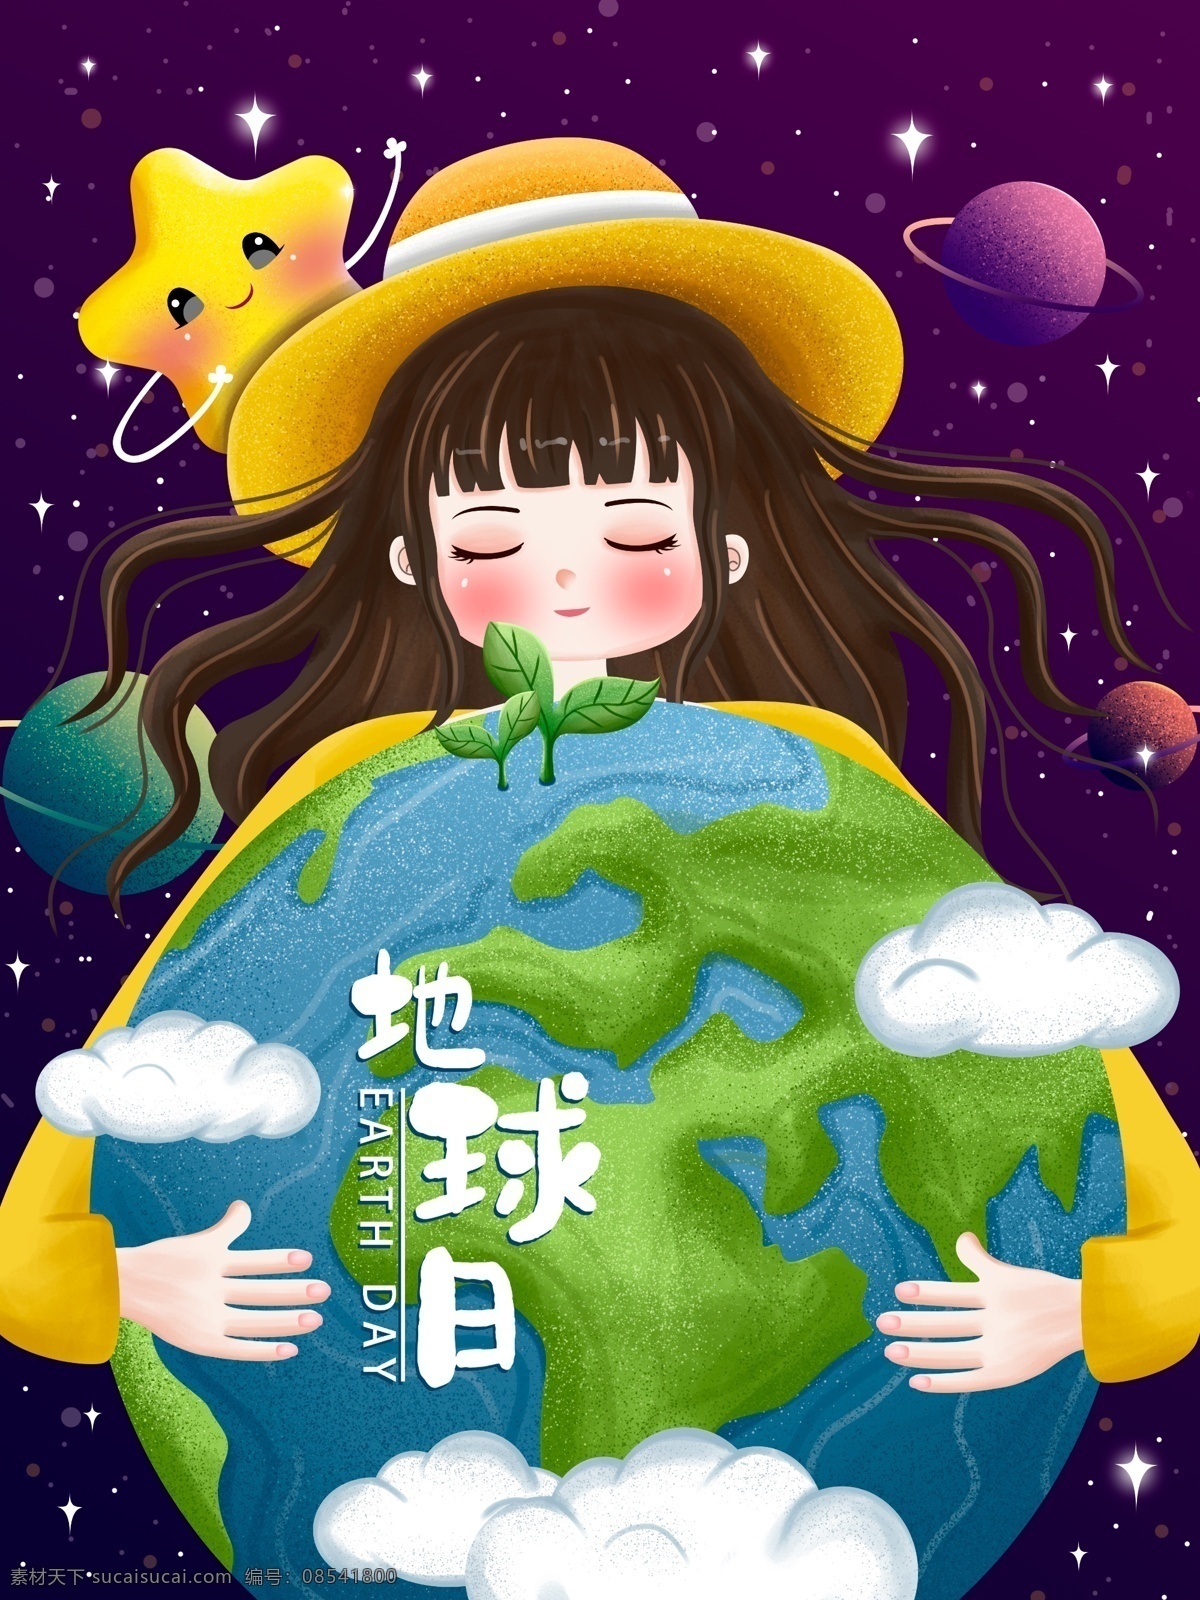 原创 世界 地球日 节日 环保 插画 星空 宇宙 地球 星星 节能 地球一小时